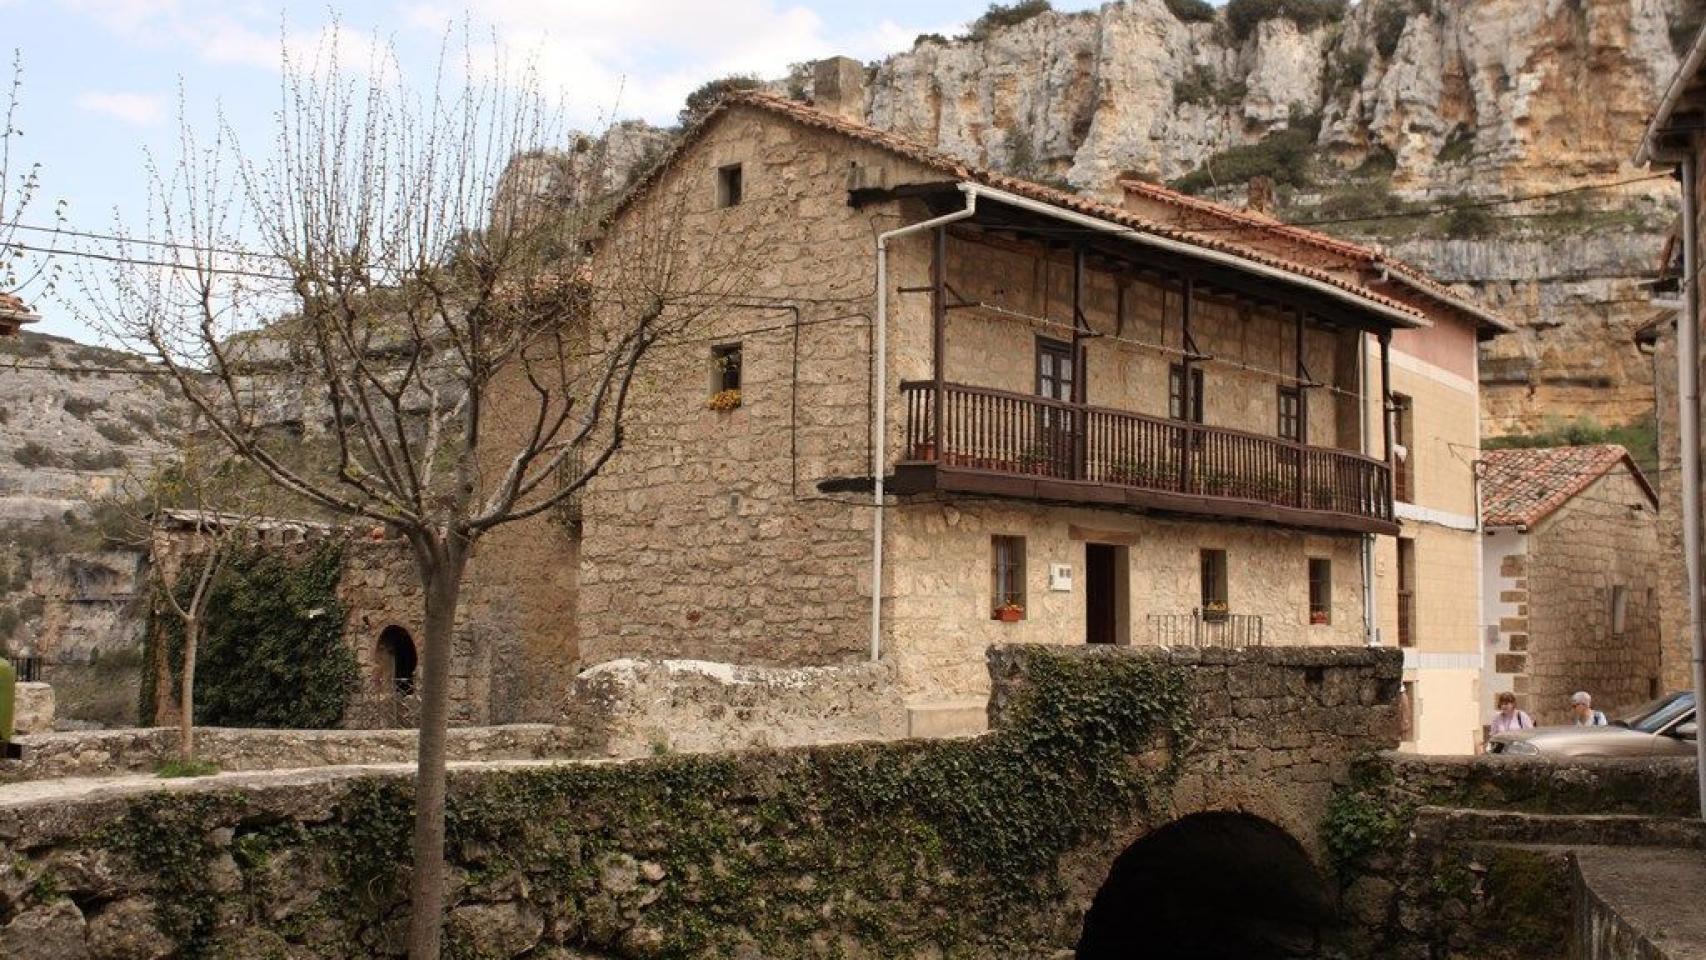 Orbaneja del Castillo, Burgos